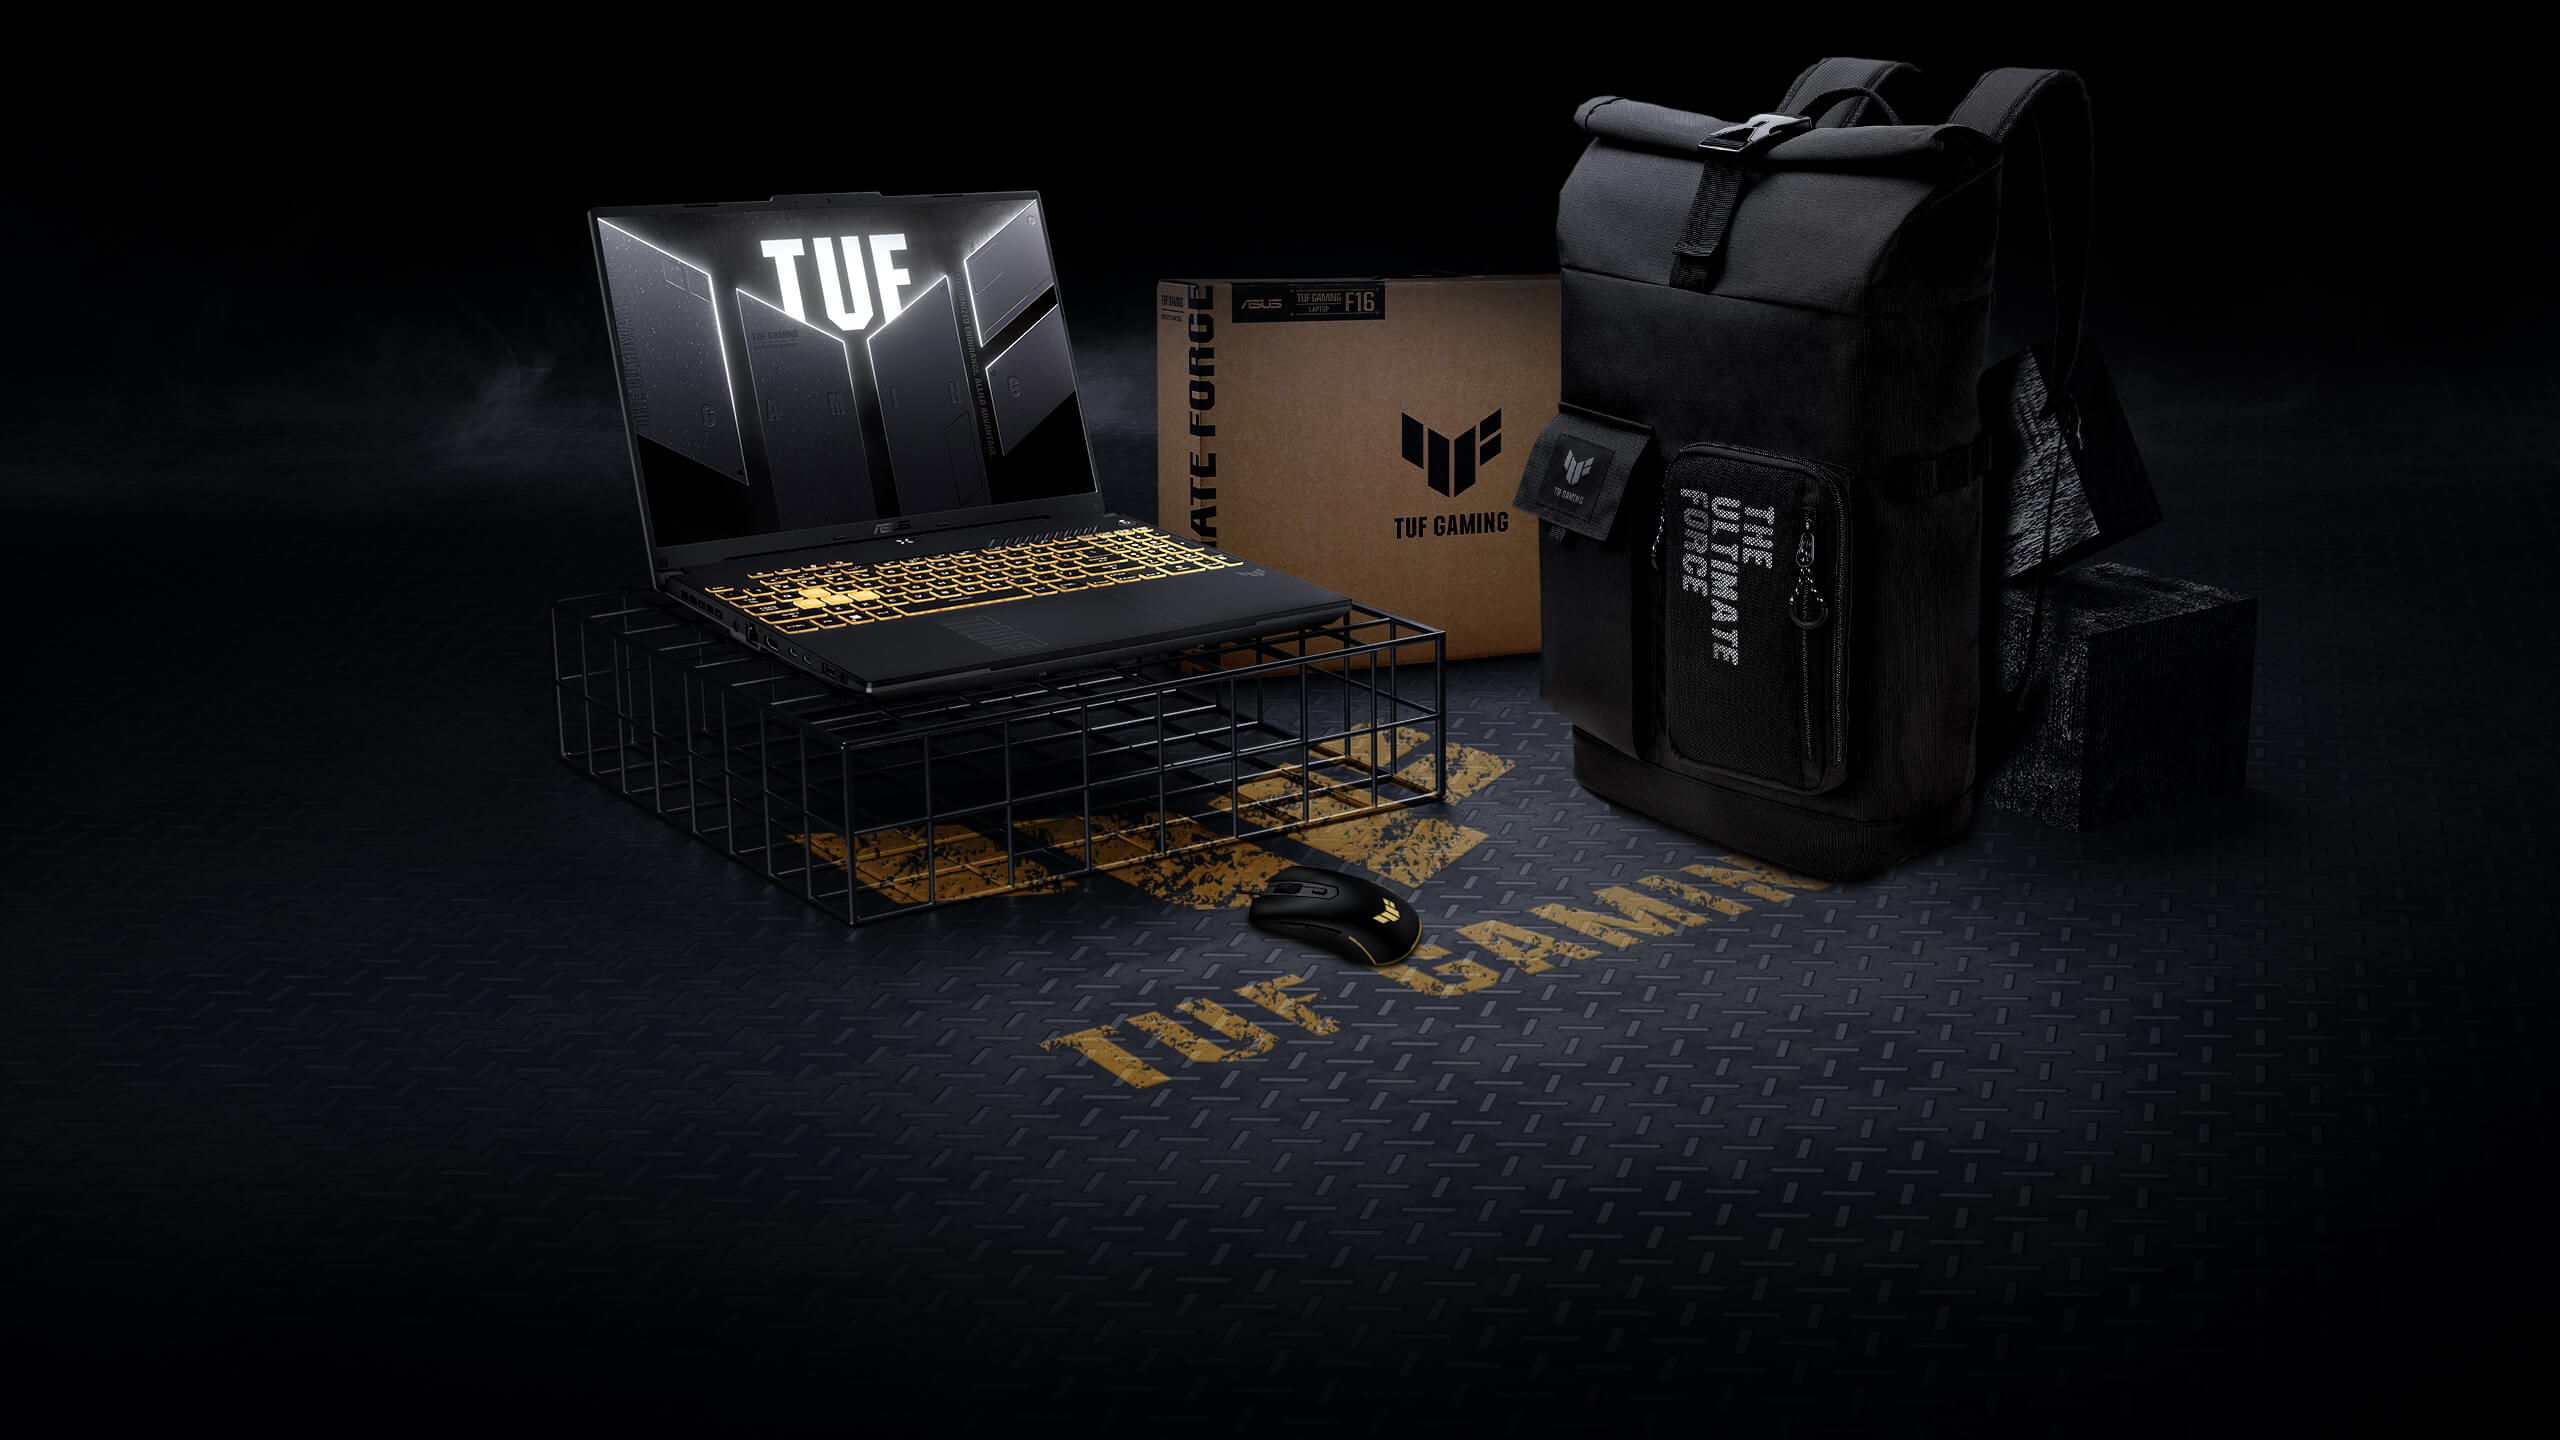 Le TUF Gaming F16 sur un cadre métallique, avec une souris TUF Gaming et un sac à dos TUF Gaming disposés à proximité.